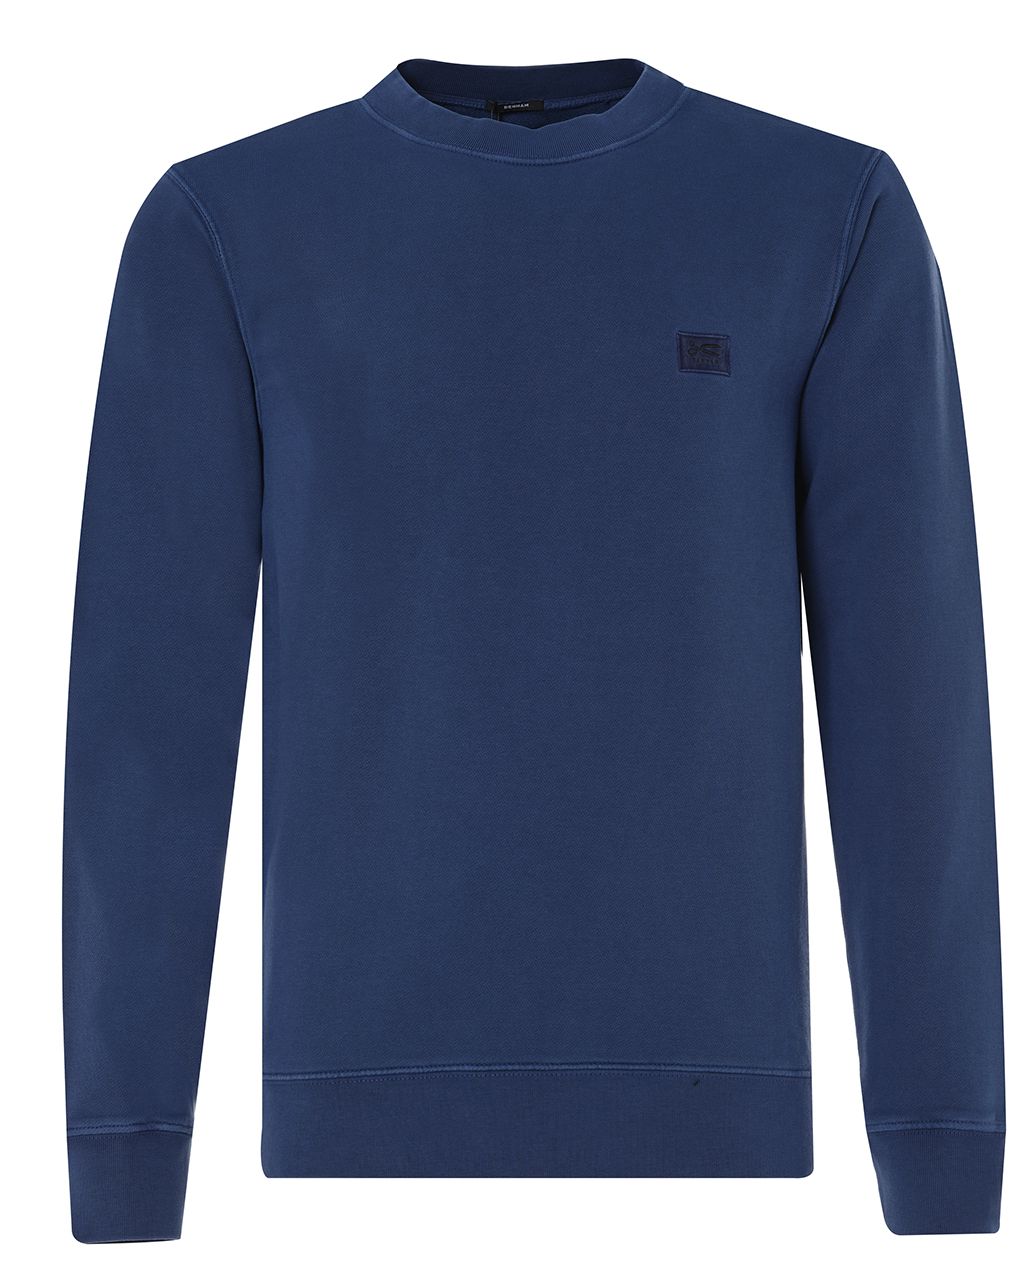 DENHAM Applique Sweater Blauw 075828-001-L